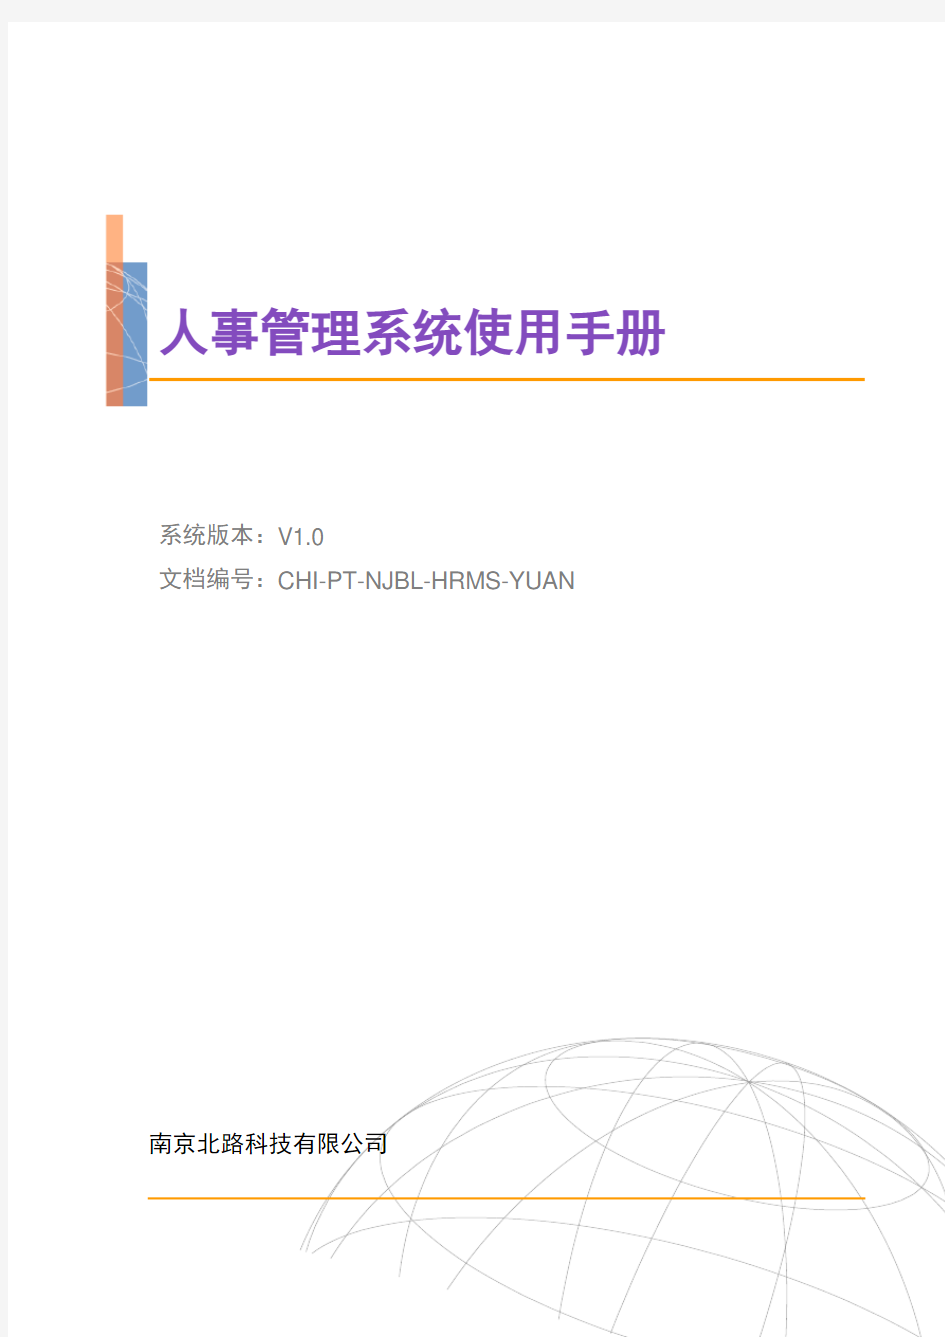 人事管理系统操作手册(V1.0)